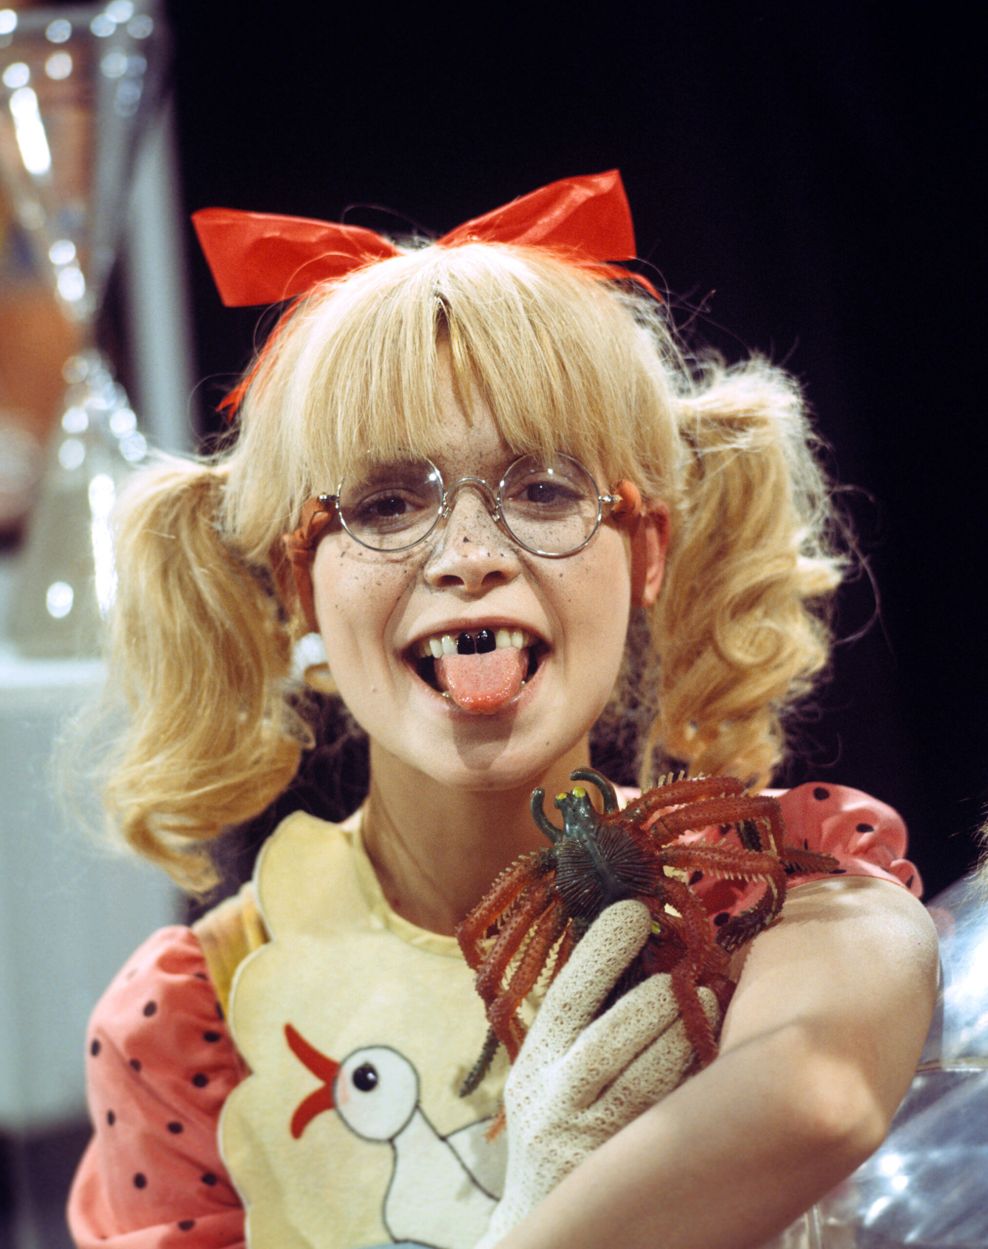 Ingrid Steeger am 14.11.1974 in der Comedy-Fernsehserie „Klimbim“. Sie streckt als Gaby die Zunge heraus. (Archivbild)